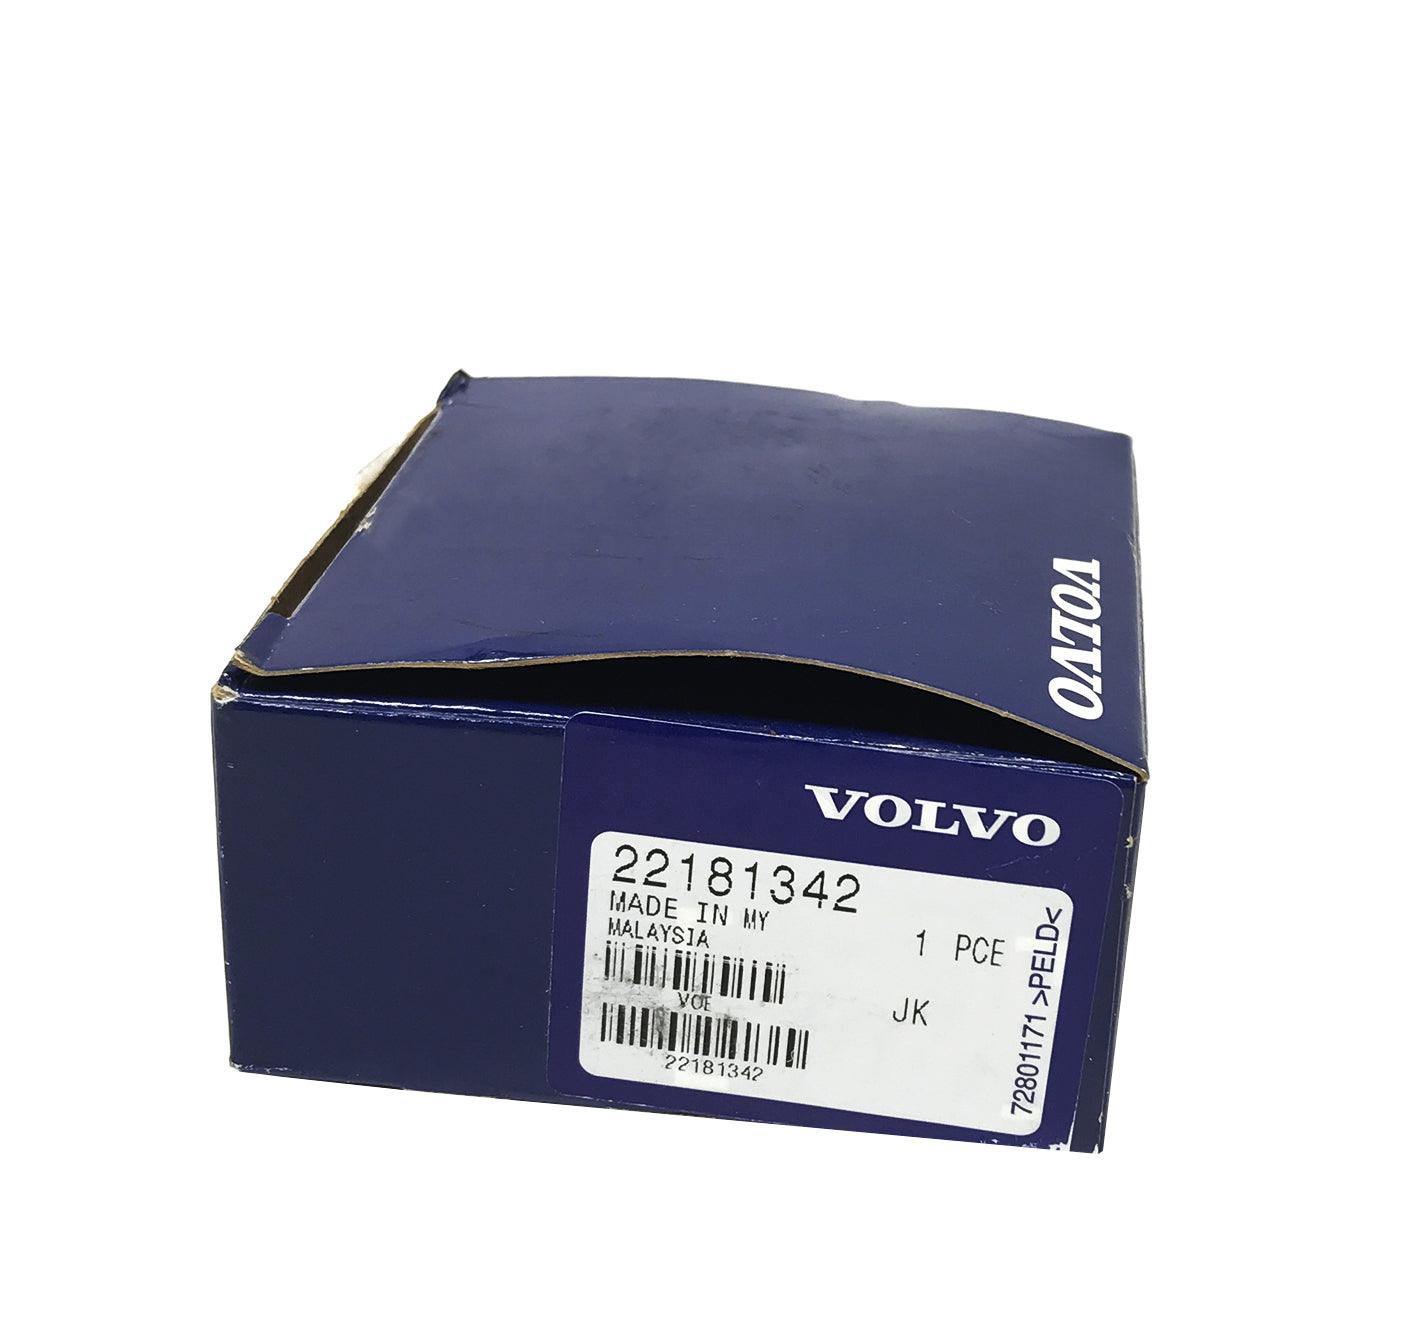 22181342 Genuine Volvo® Egr Pressure Sensor - ADVANCED TRUCK PARTS